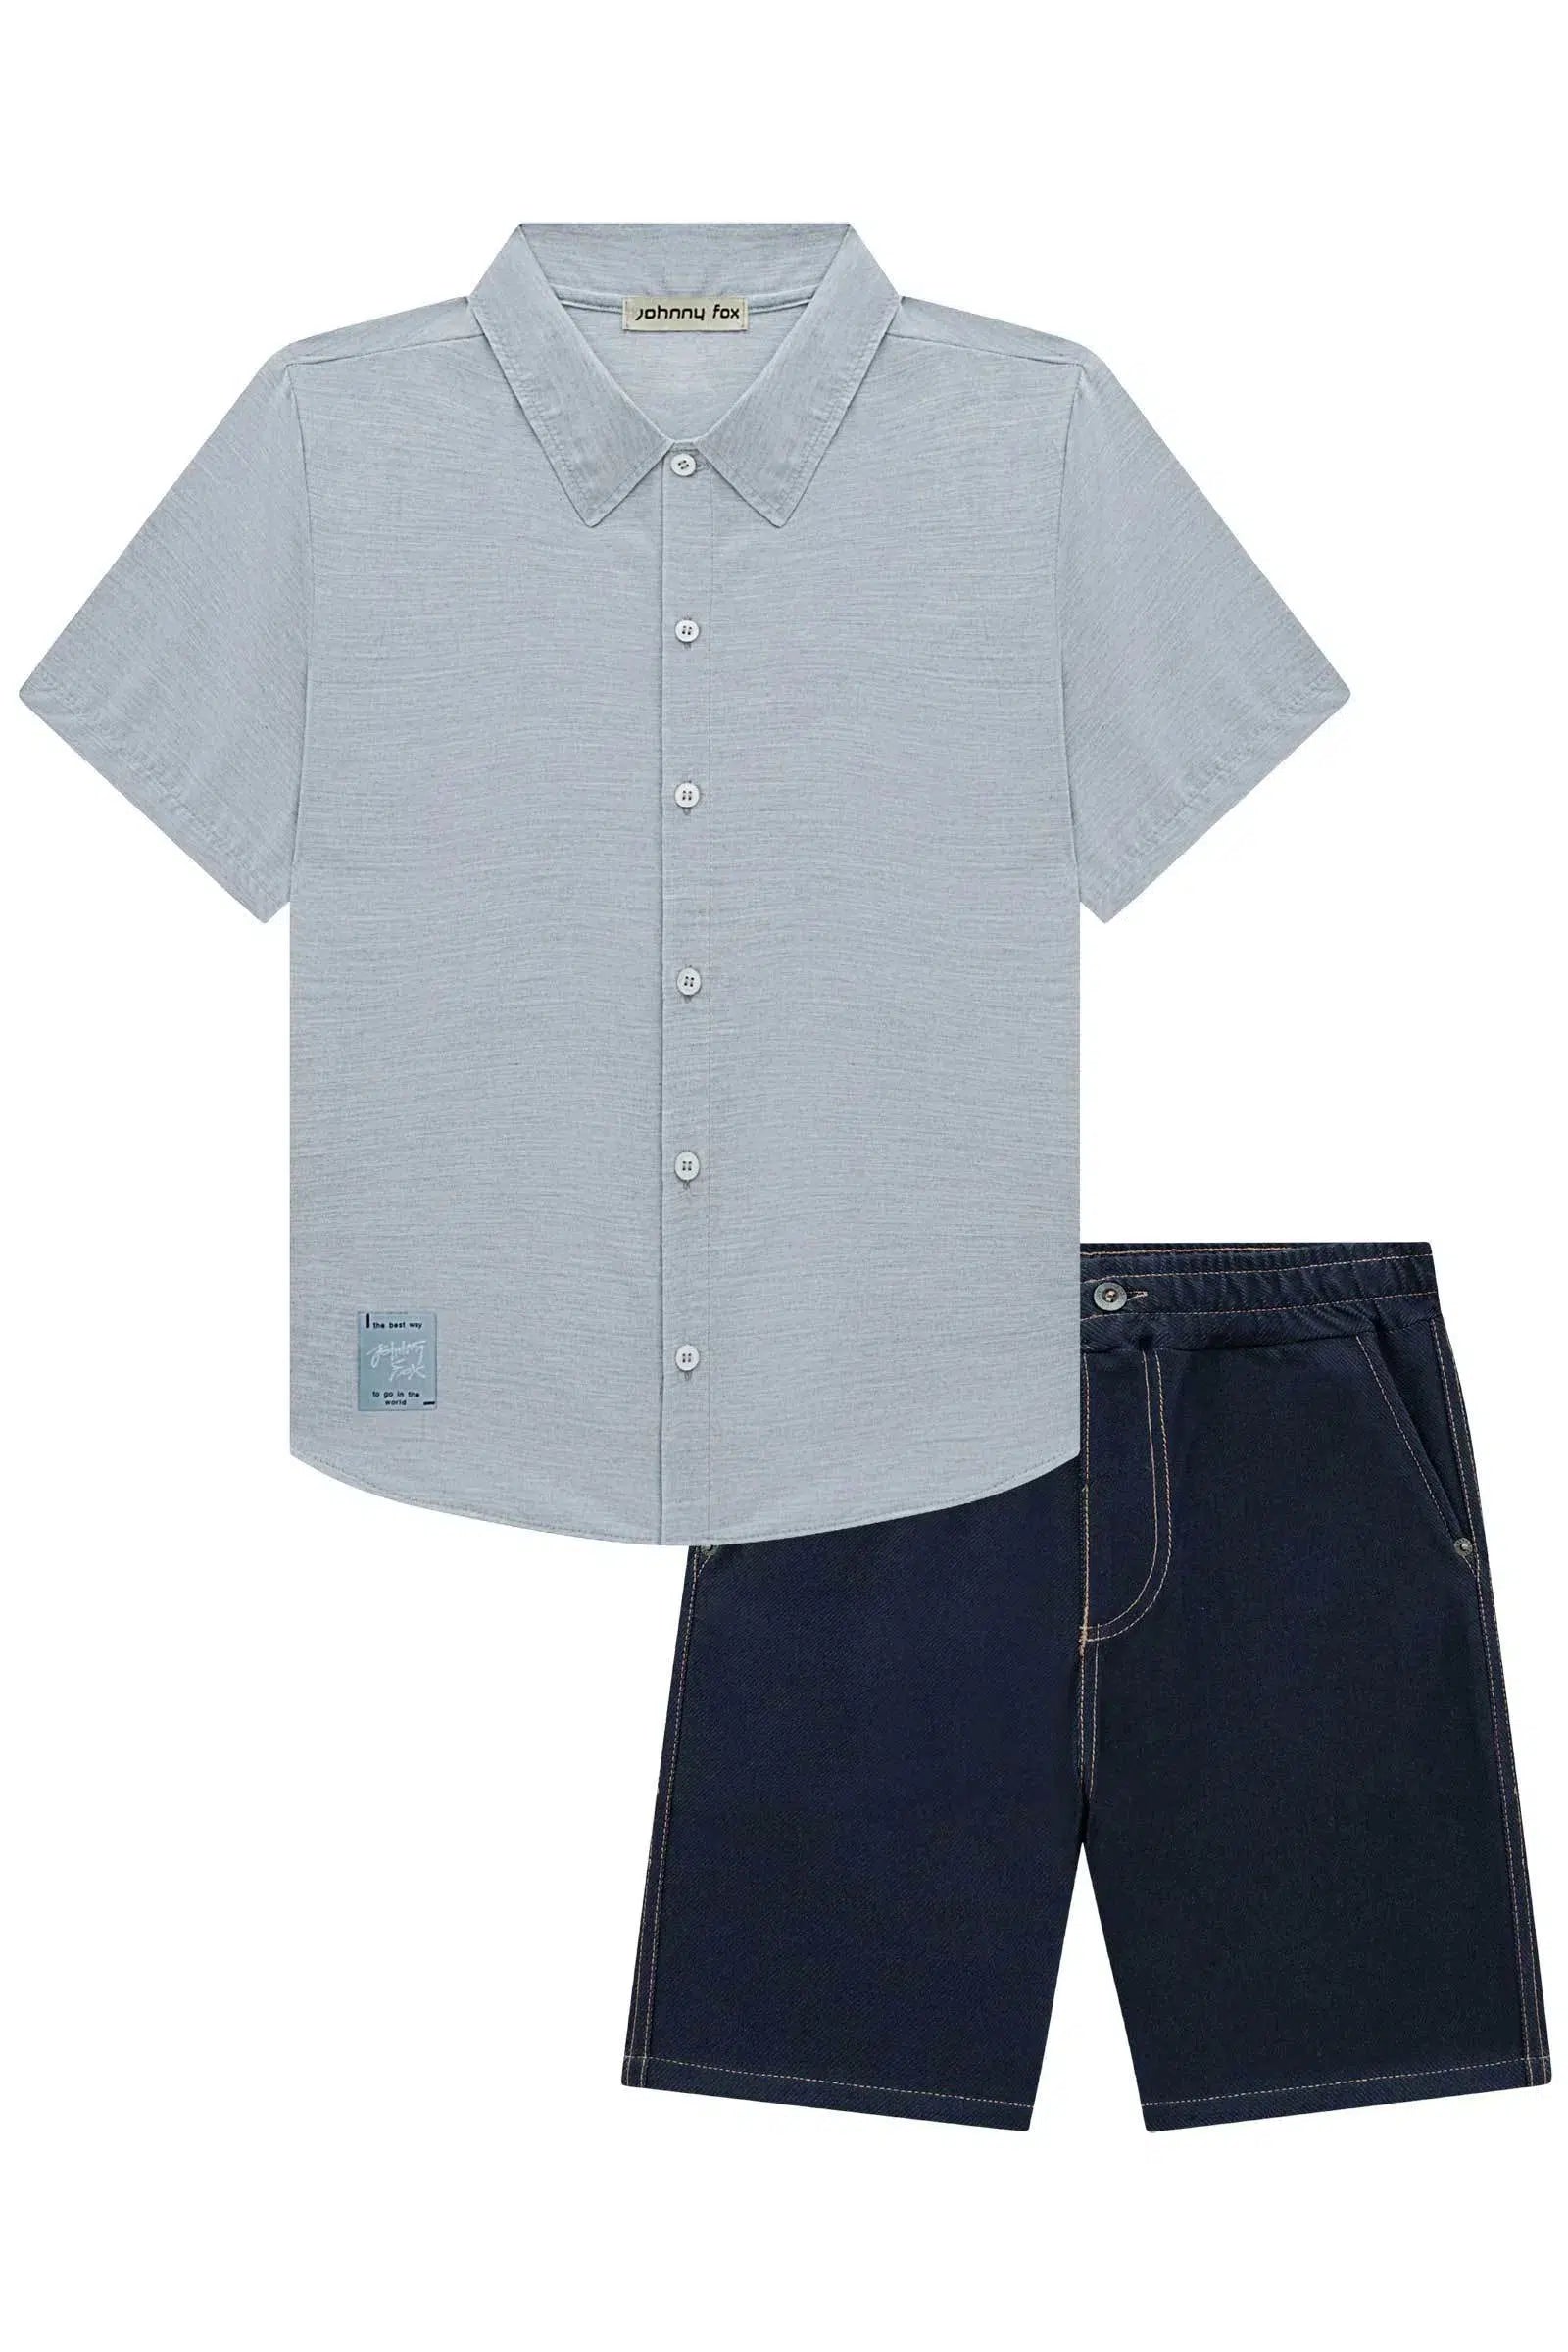 Conjunto de Camisa em Tecido Zagora e Bermuda em Cotton Jeans com Elastano 72497 Johnny Fox